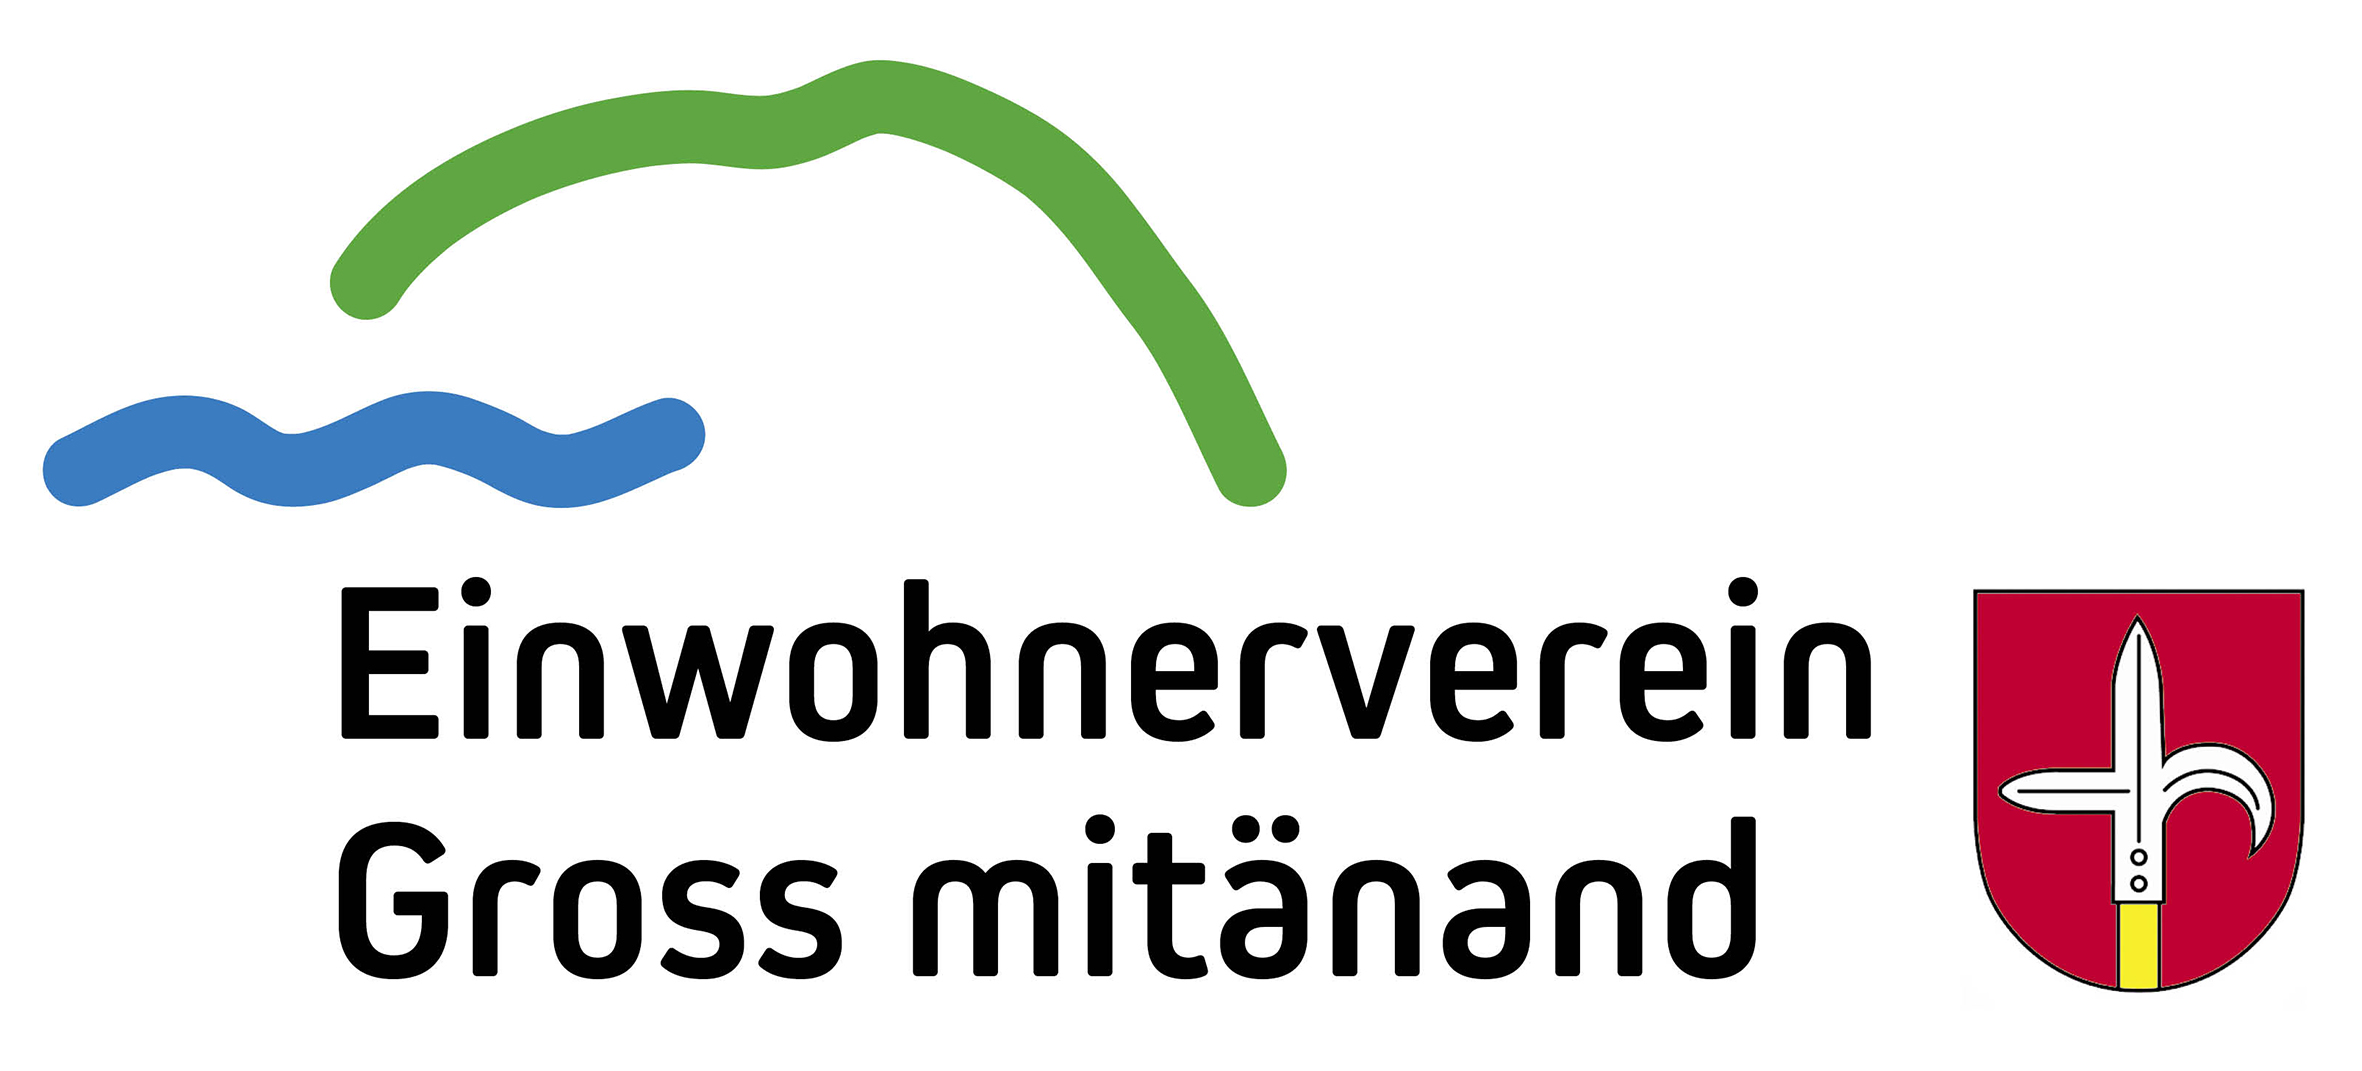 Logo - Einwohnerverein Gross mitänand